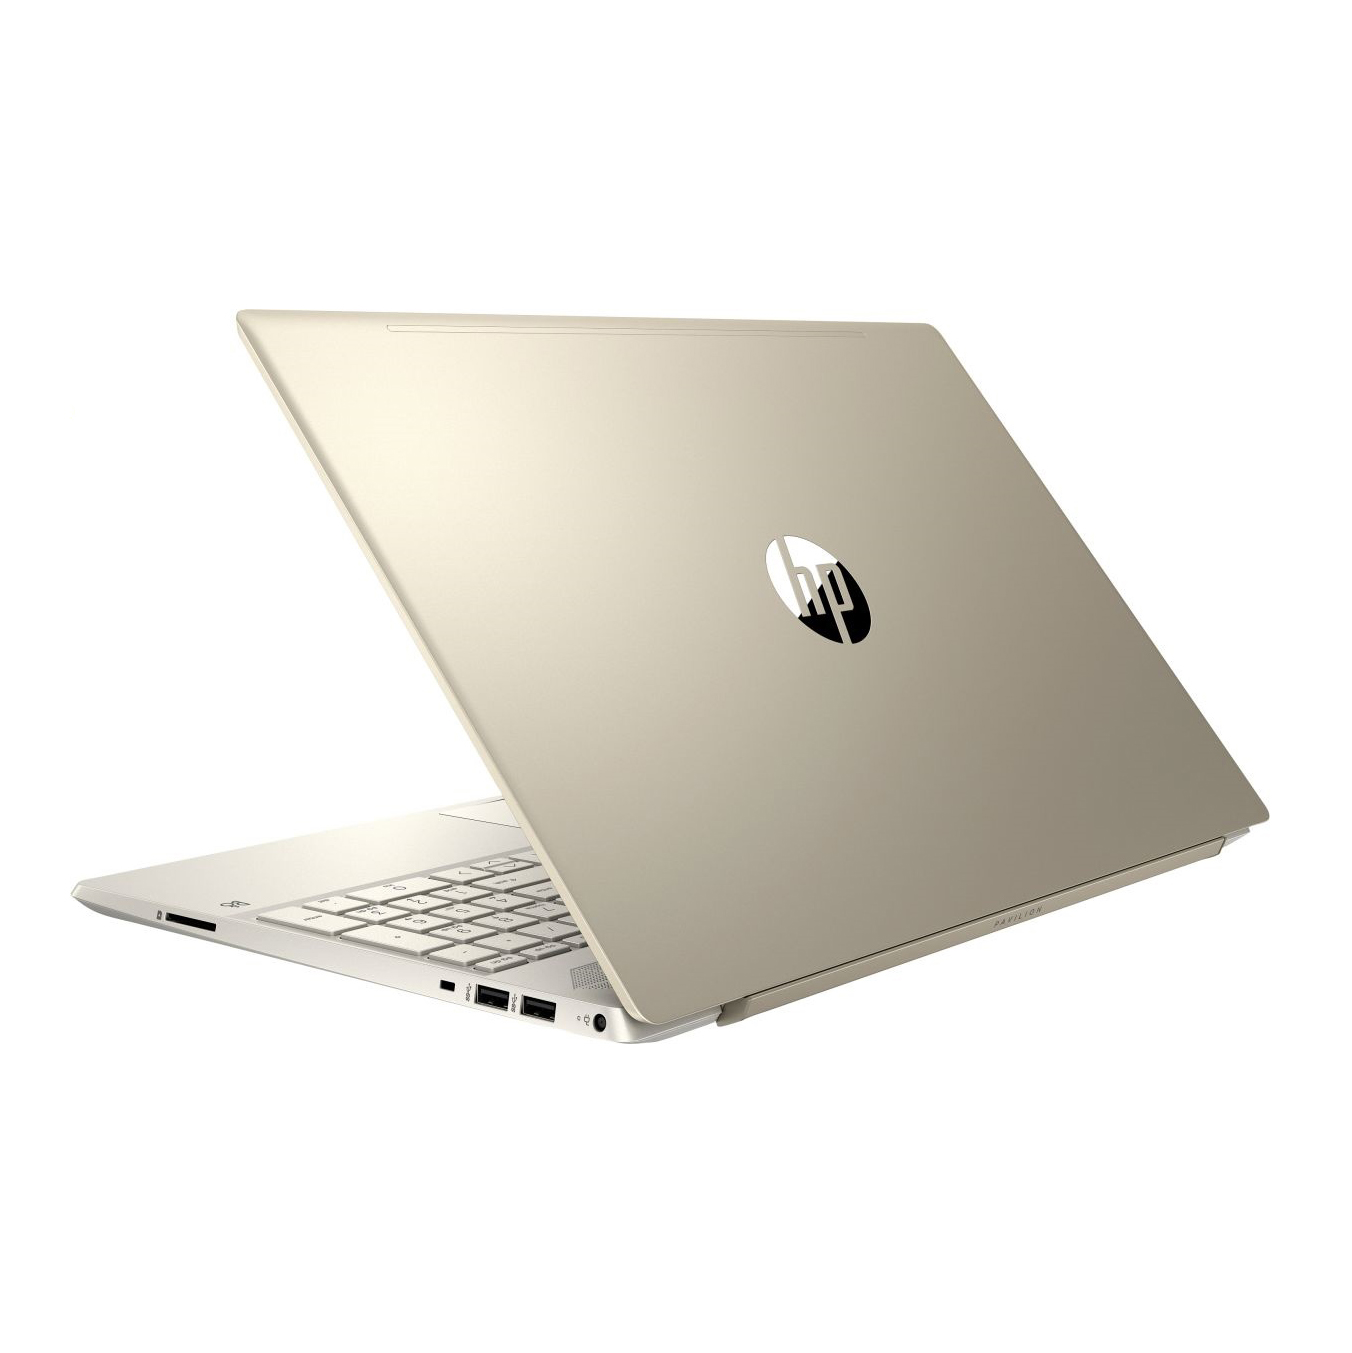 Laptop HP Pavilion 15-cs3014TU ( i5-1035G1/4GB RAM/256GB SSD/15.6 inch FHD/Win 10/Vàng) - 8QP20PA